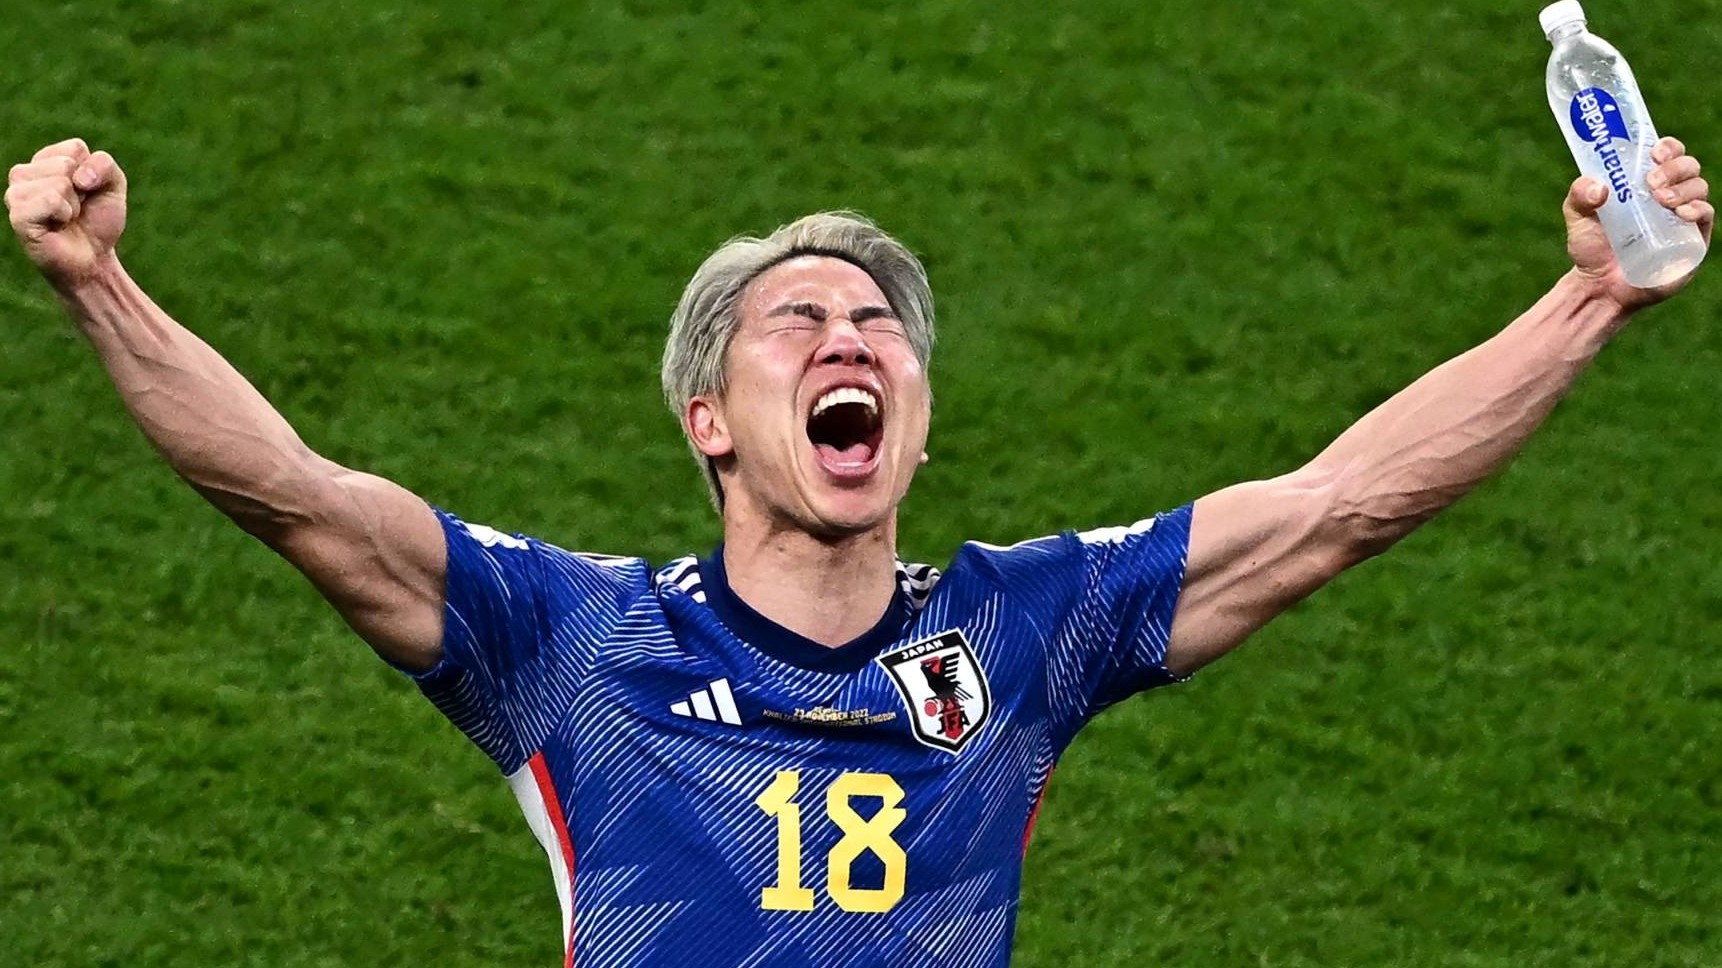 المهاجم الياباني تاكوما أسانو يحتفل بفوز فريقه في مباراة قطر للمجموعة الخامسة من كأس العالم 2022 بين ألمانيا واليابان الخميس